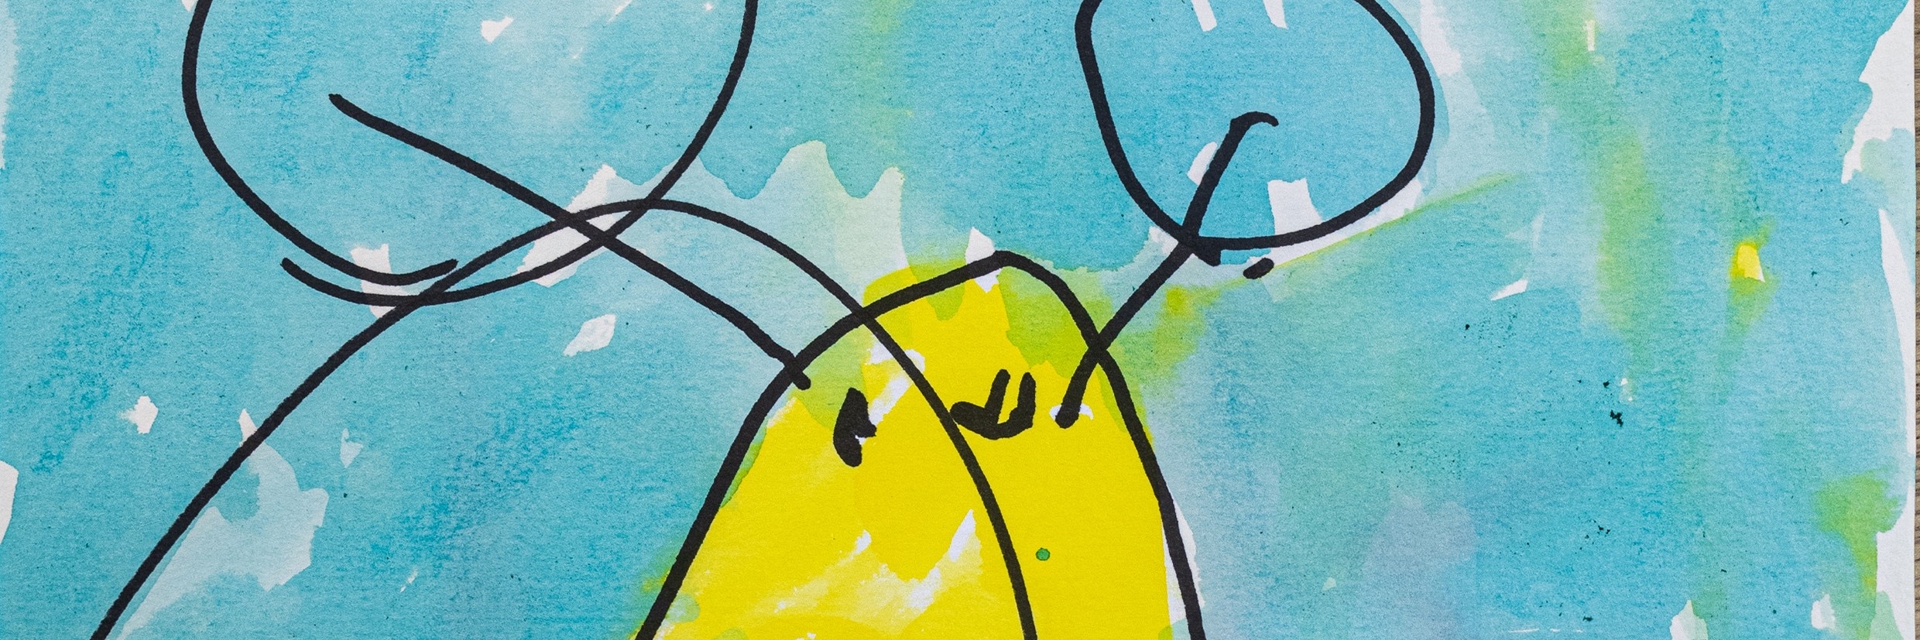 Børnetegning fra Alfehuset i Næstved Kommune. Tegningen er en gul sommerfugl med røde vinger, baggrunden er blå.